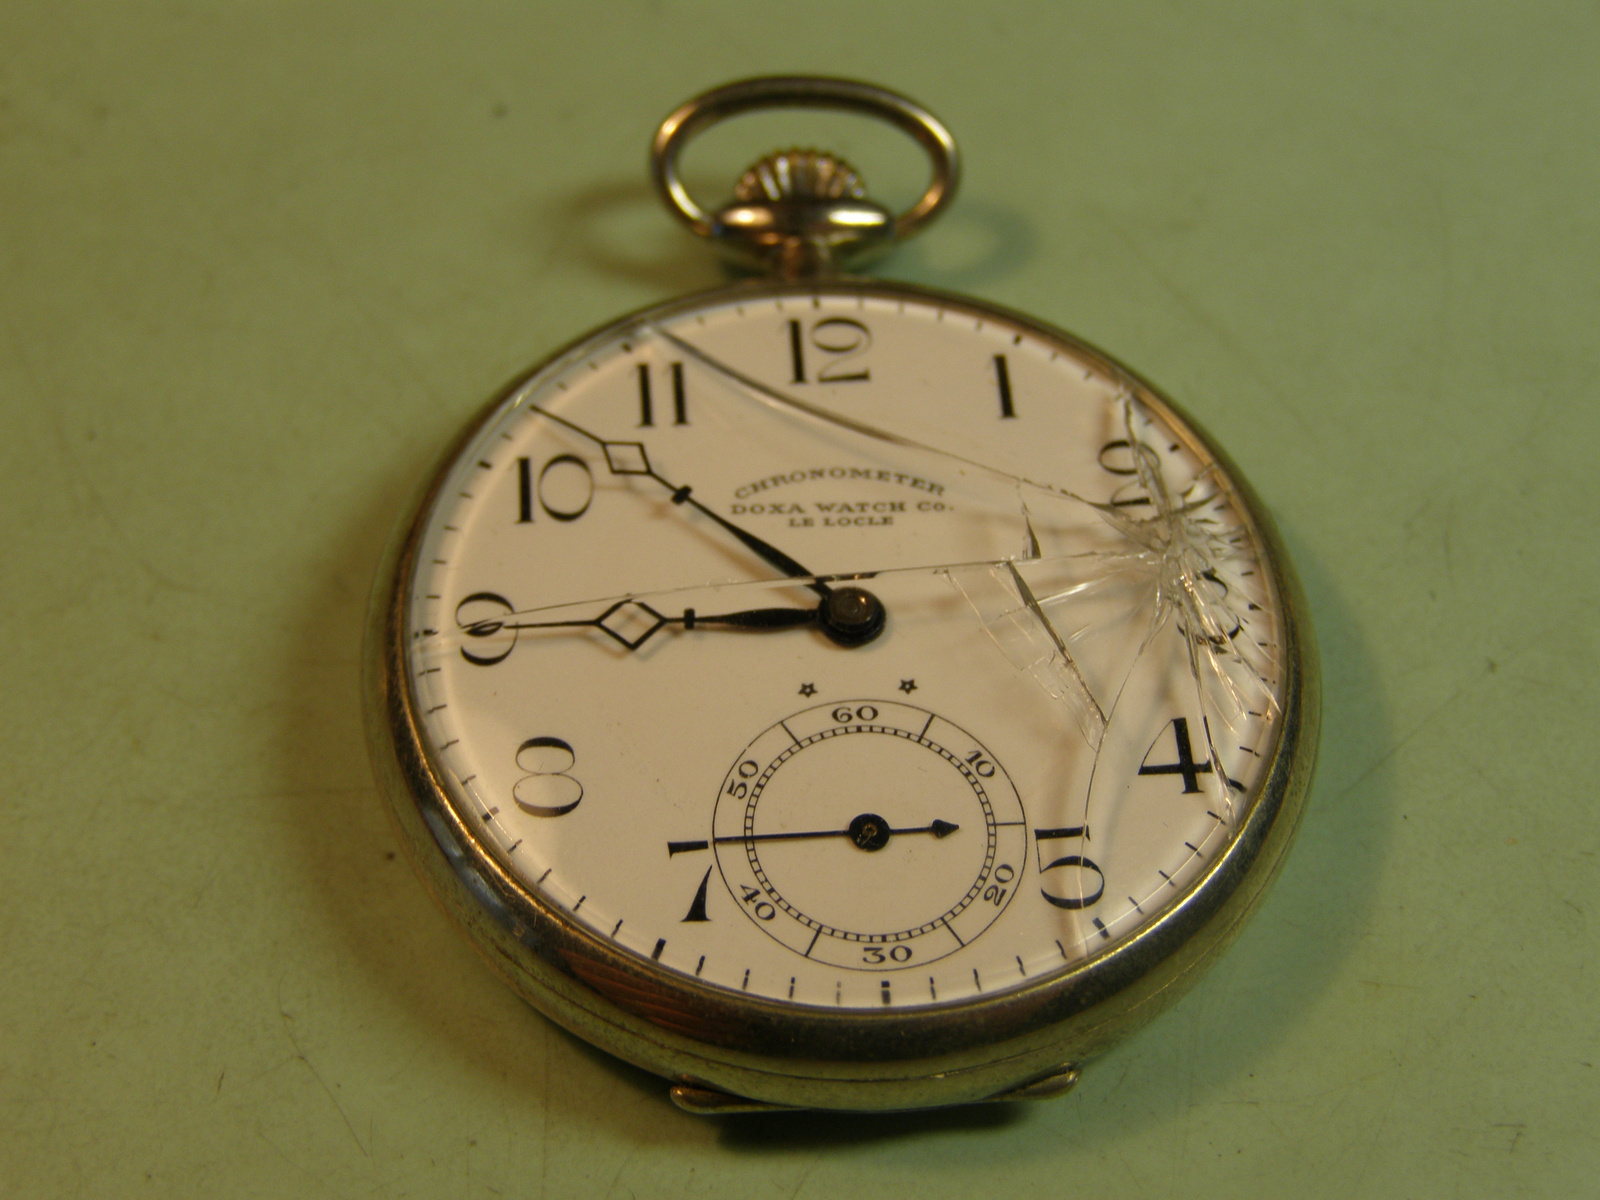 Doxa Chronometer